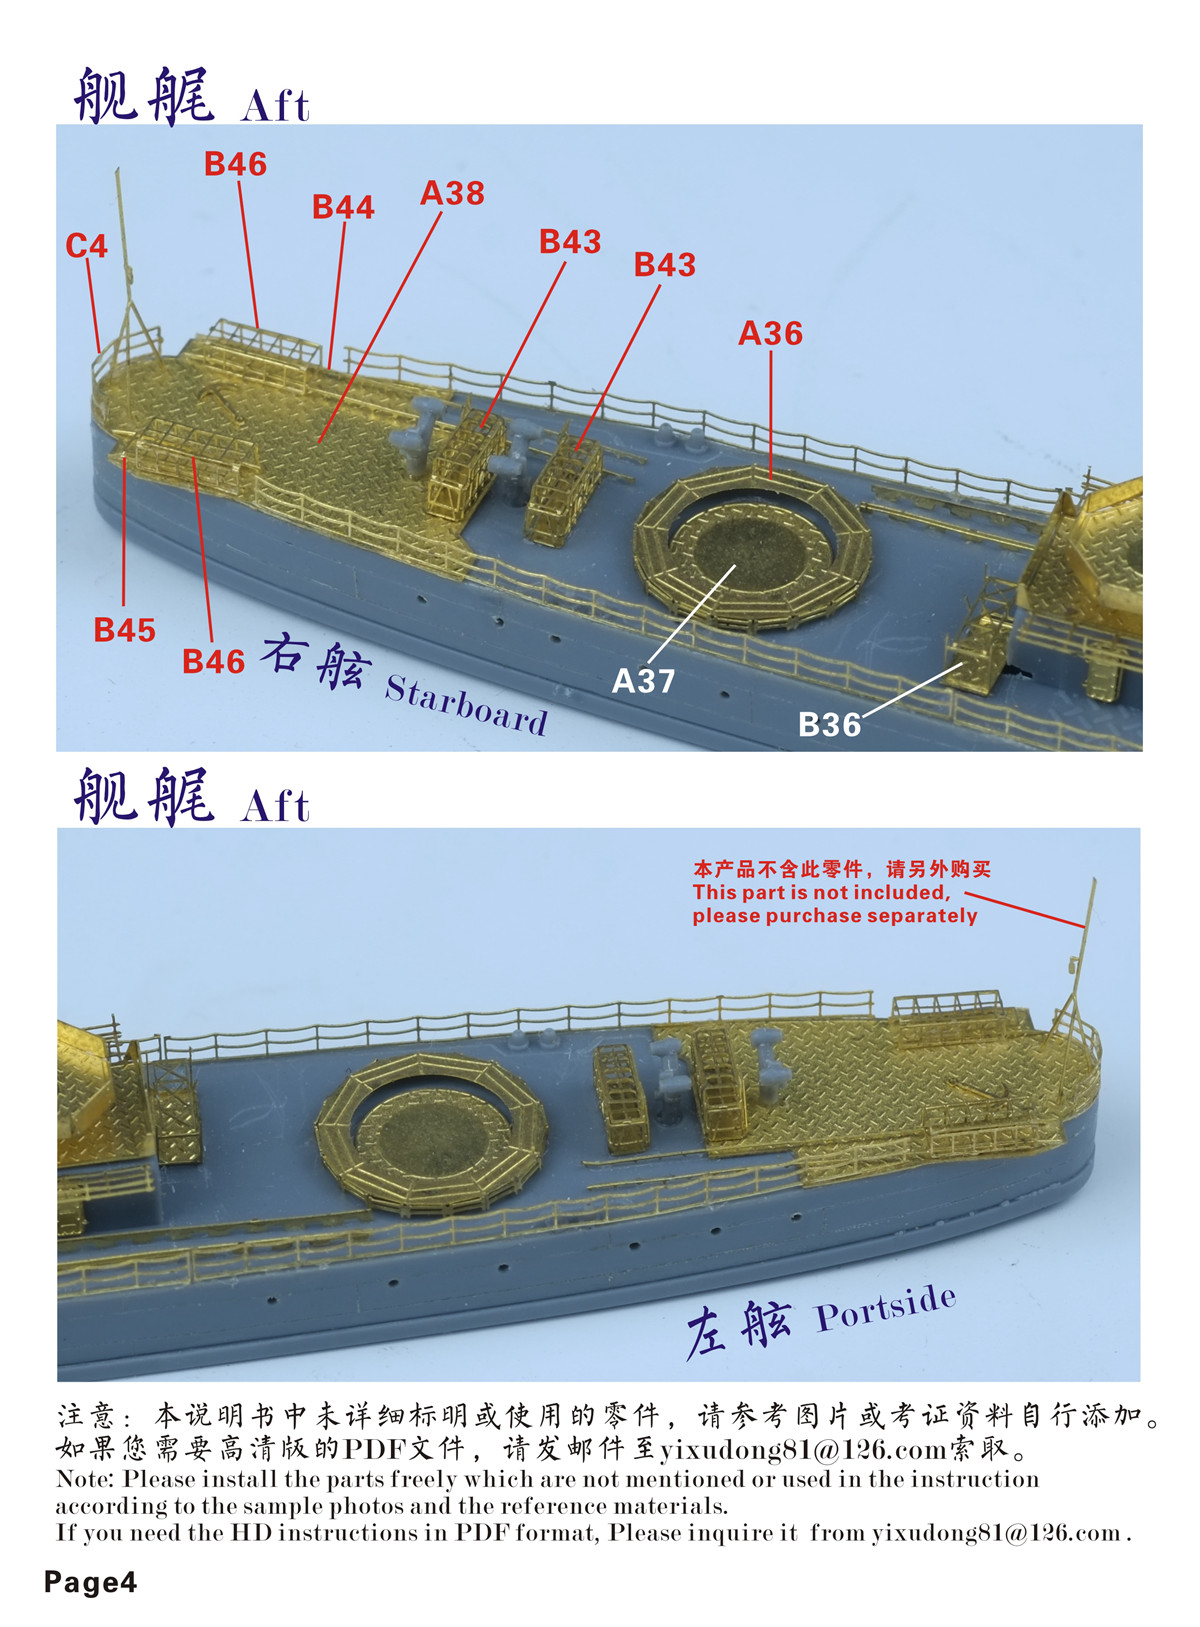 1/700 二战日本海军松号驱逐舰精简版升级改造套件(配田宫31428) - 点击图像关闭